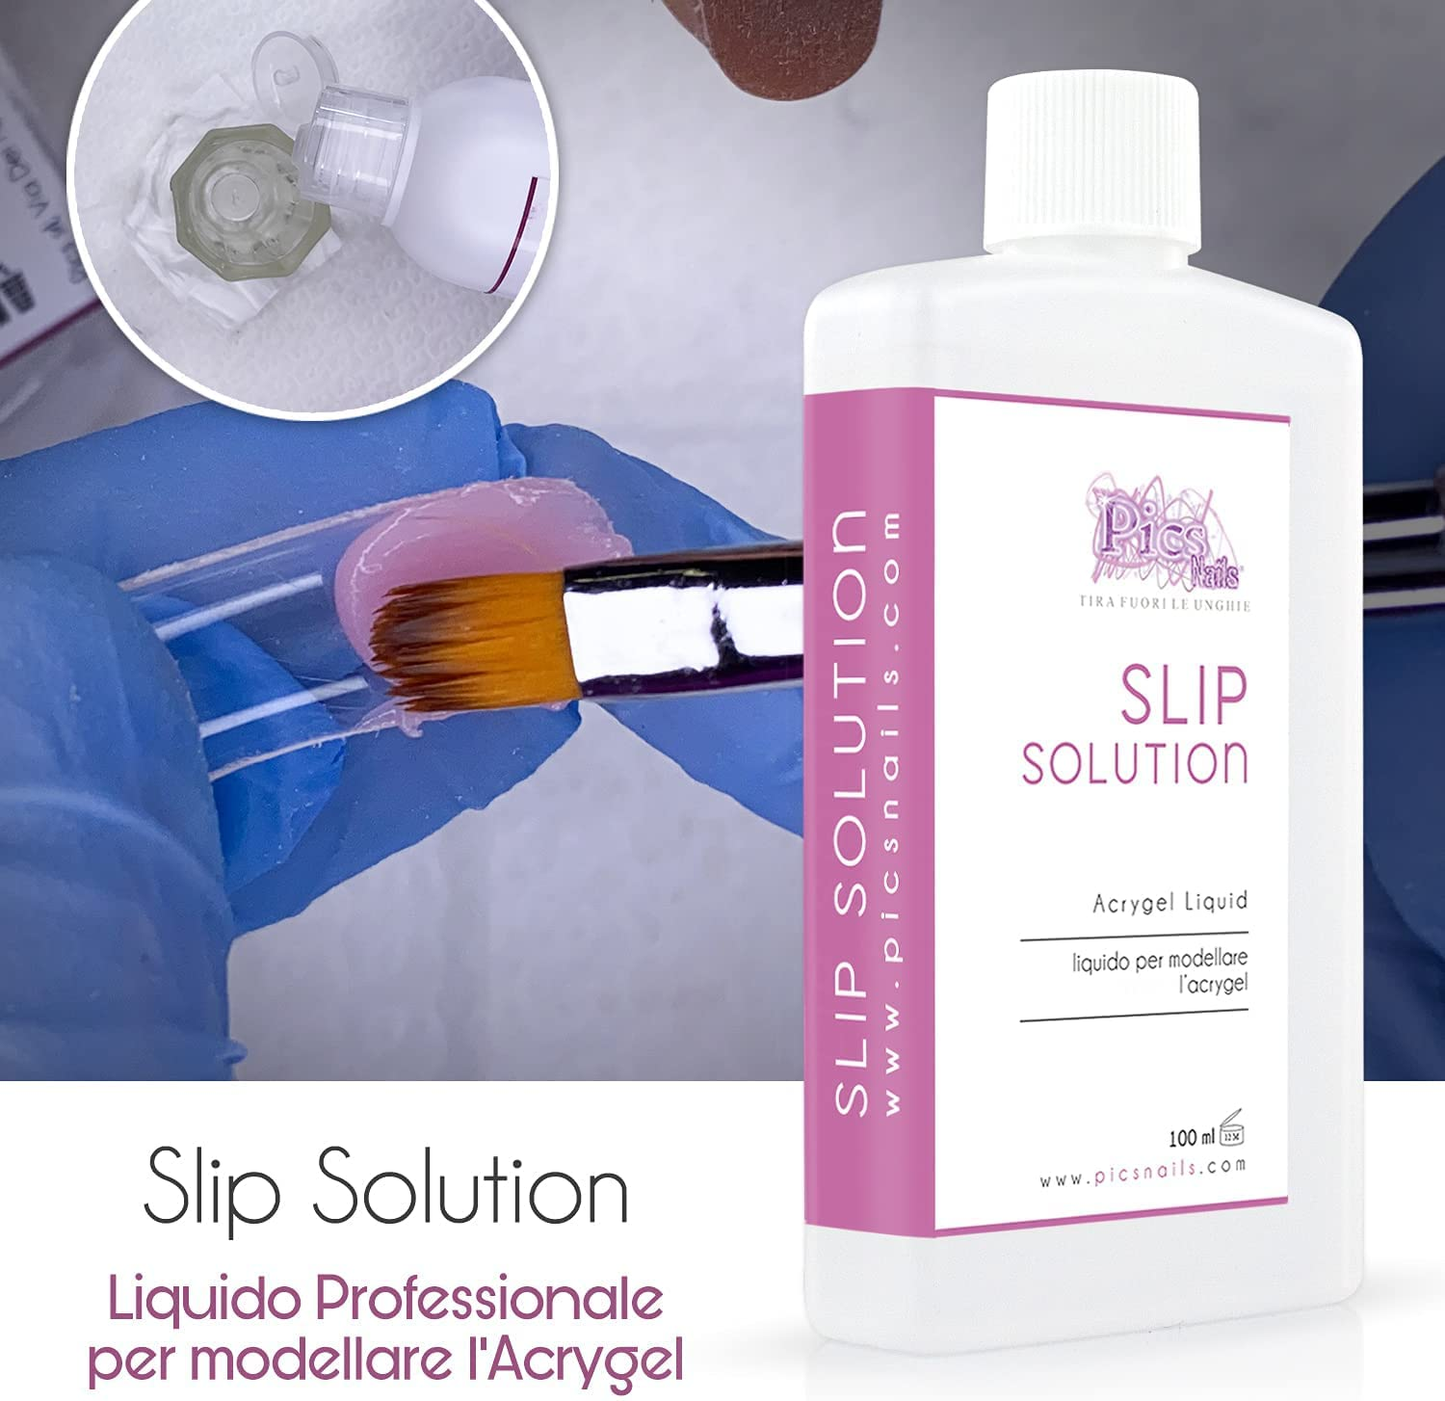 Slip Solution 100 Ml Liquido Professionale per Unghie - Liquido Modellante per Acrygel Alta Qualità, Ammorbidisce E Facilita La Lavorazione Del Gel Ibrido per Unghie